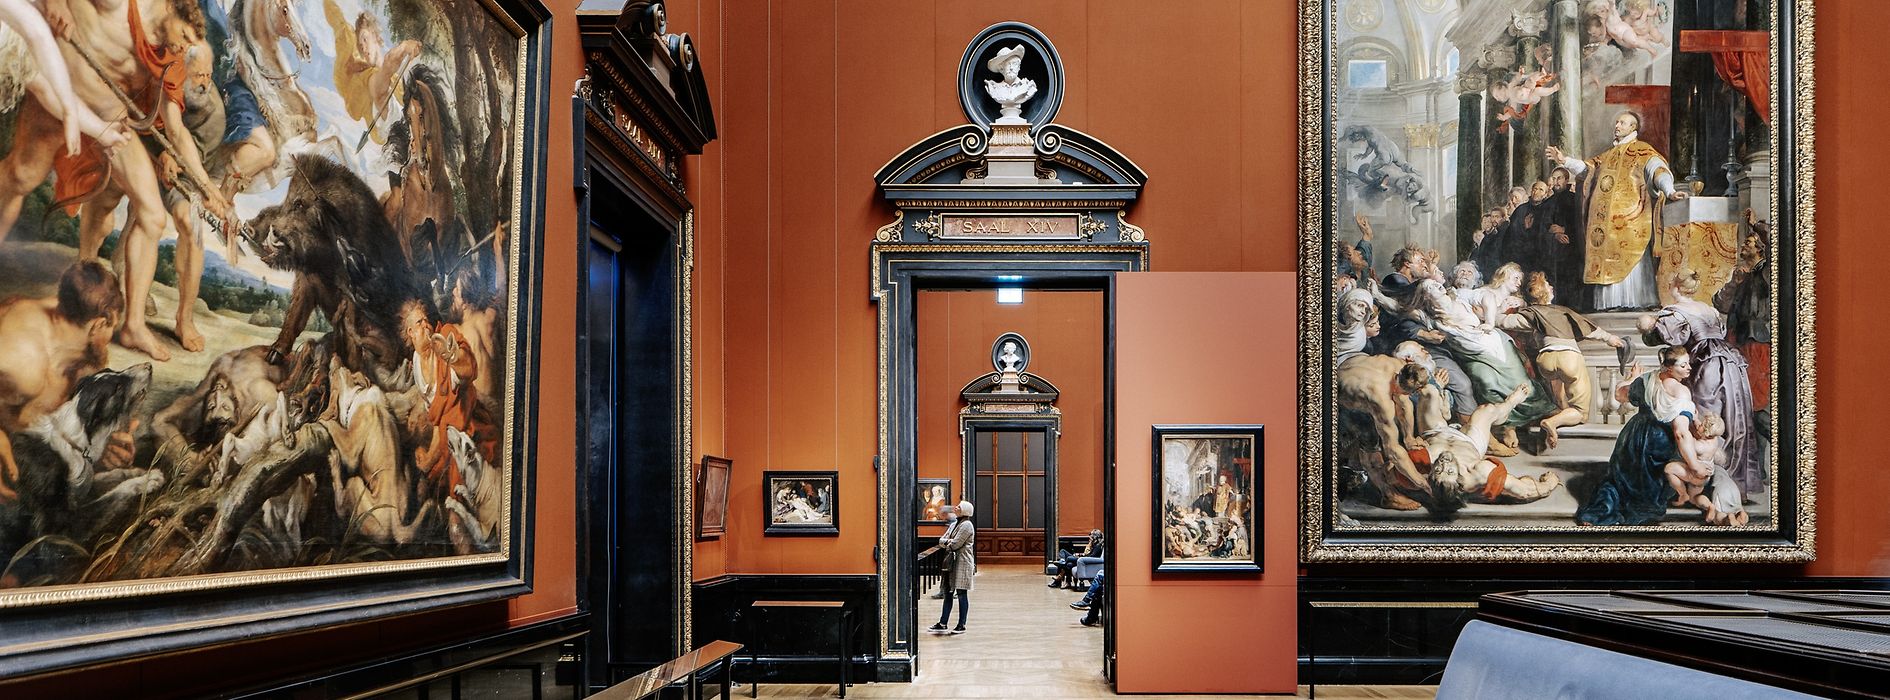 Muzeum Historii Sztuki w Wiedniu, przestrzeń wystawiennicza